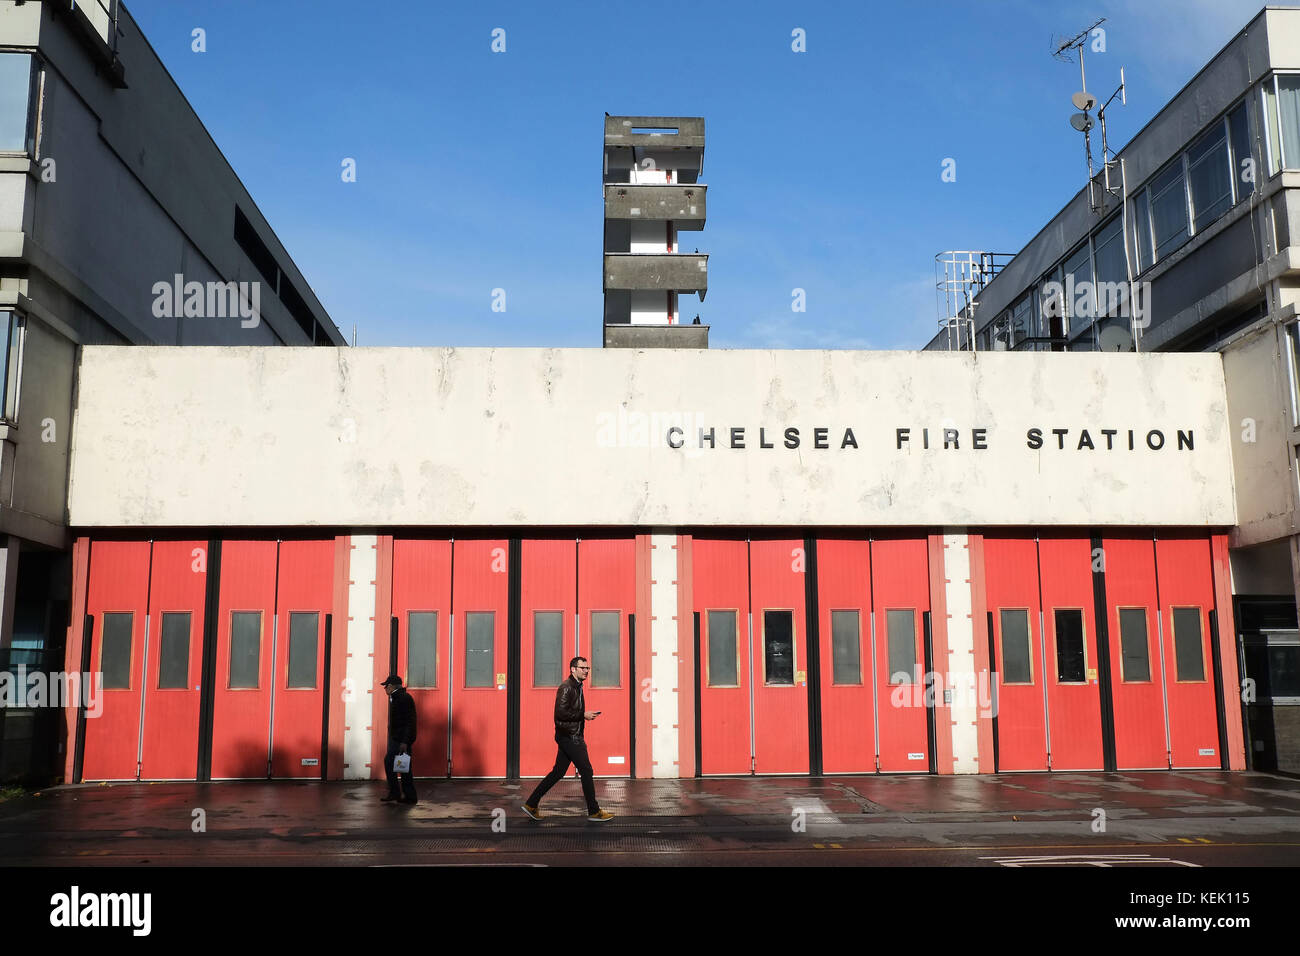 Chelsea Fire Station 264 Kings Road London. Die Station wurde am 3. März 1965 Singer Adele eröffnet hat ihre Unterstützung für die Feuerwehrleute durch den Besuch gezeigt Stockfoto